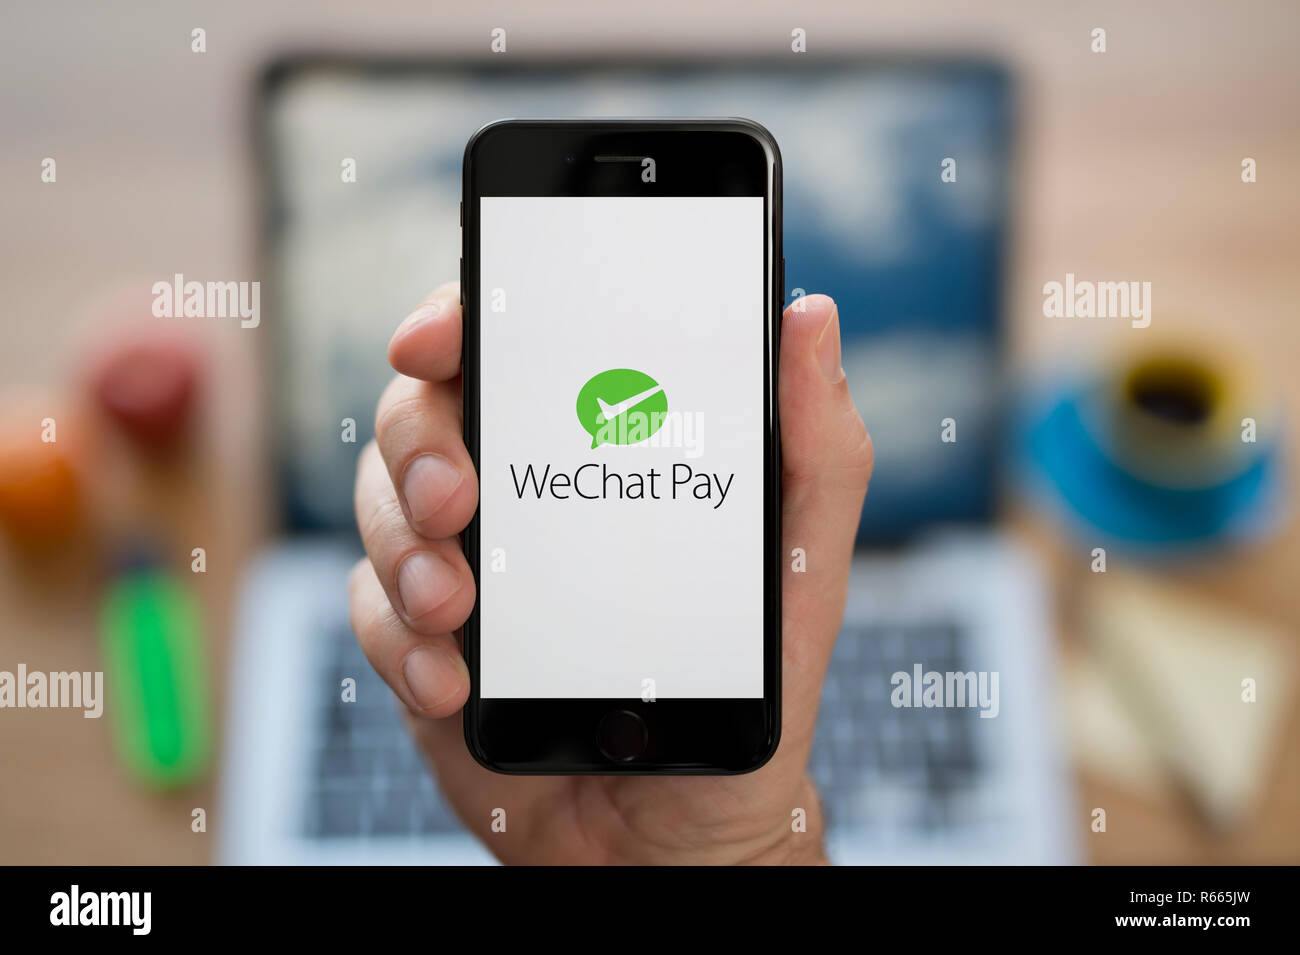 Un homme se penche sur son iPhone qui affiche le logo de WeChat payer, alors qu'assis à son bureau de l'ordinateur (usage éditorial uniquement). Banque D'Images